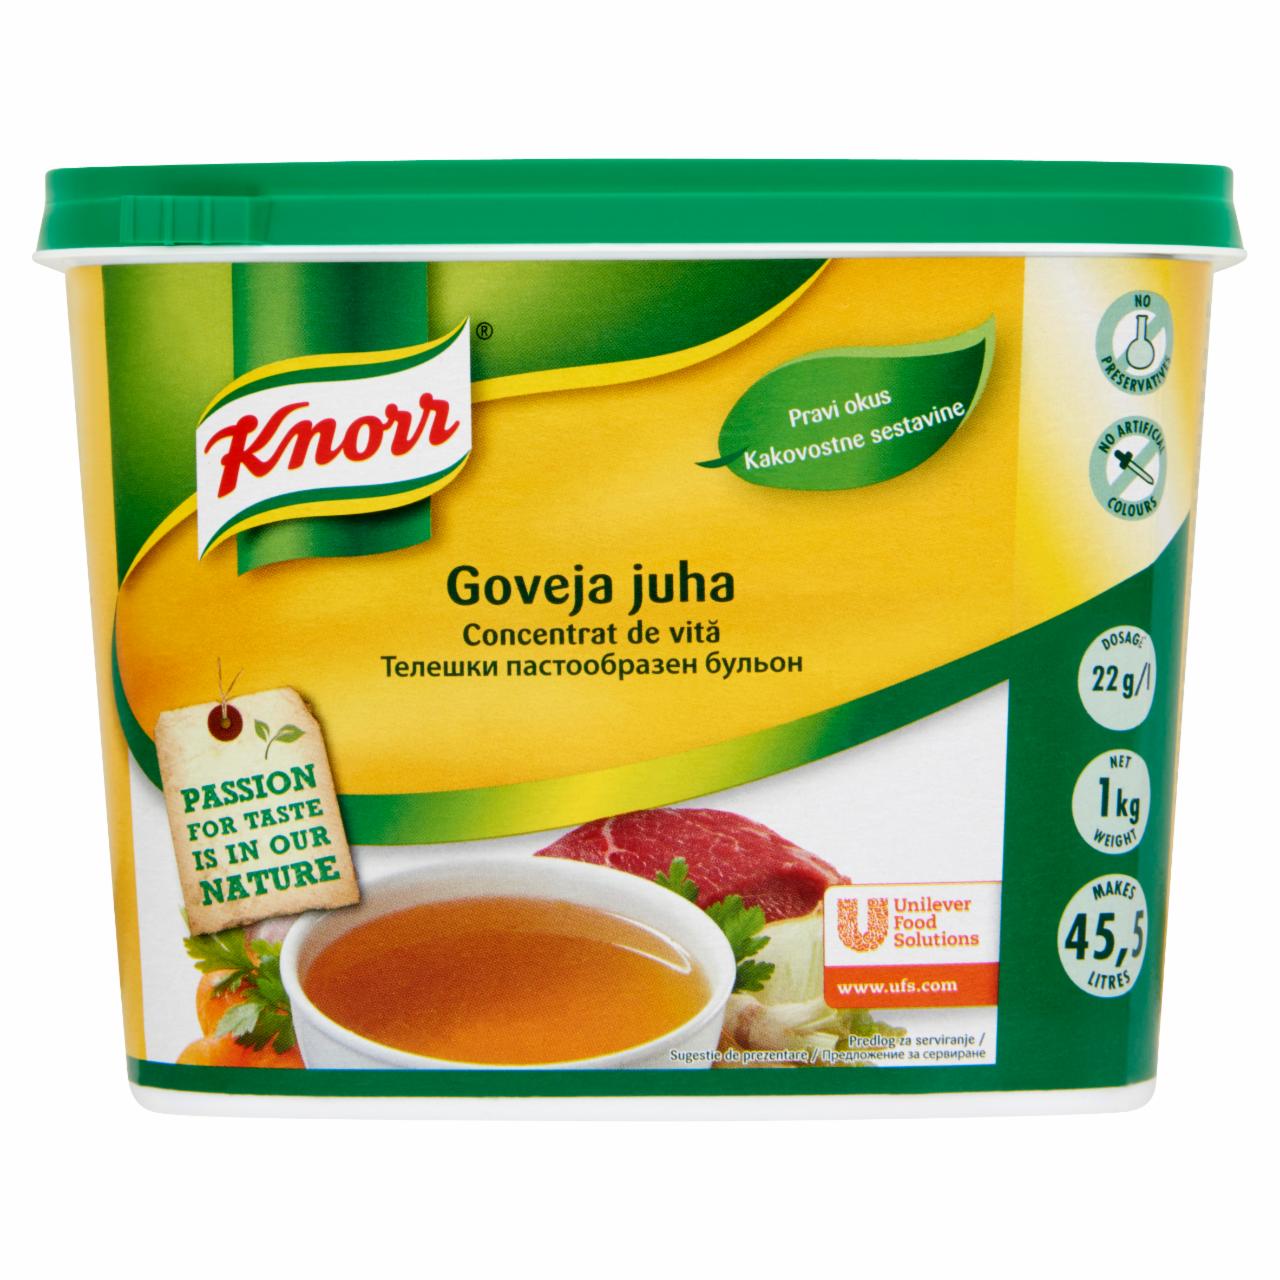 Képek - Knorr marhahúsleves alap paszta 1 kg